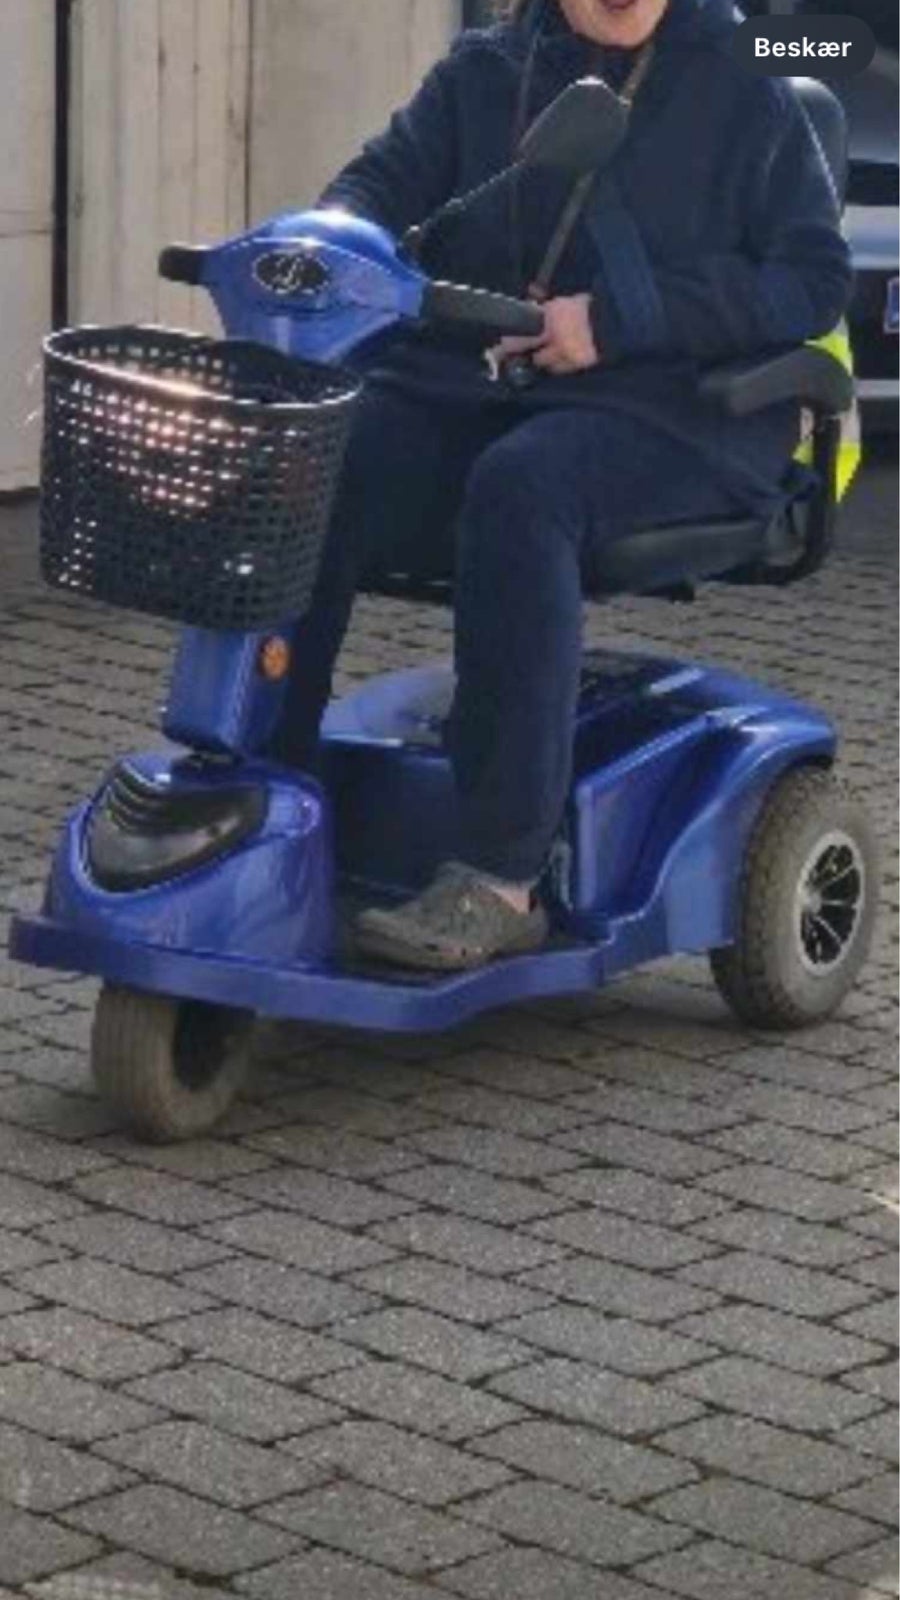 El-Scooter Smart 300, 2020, Blå